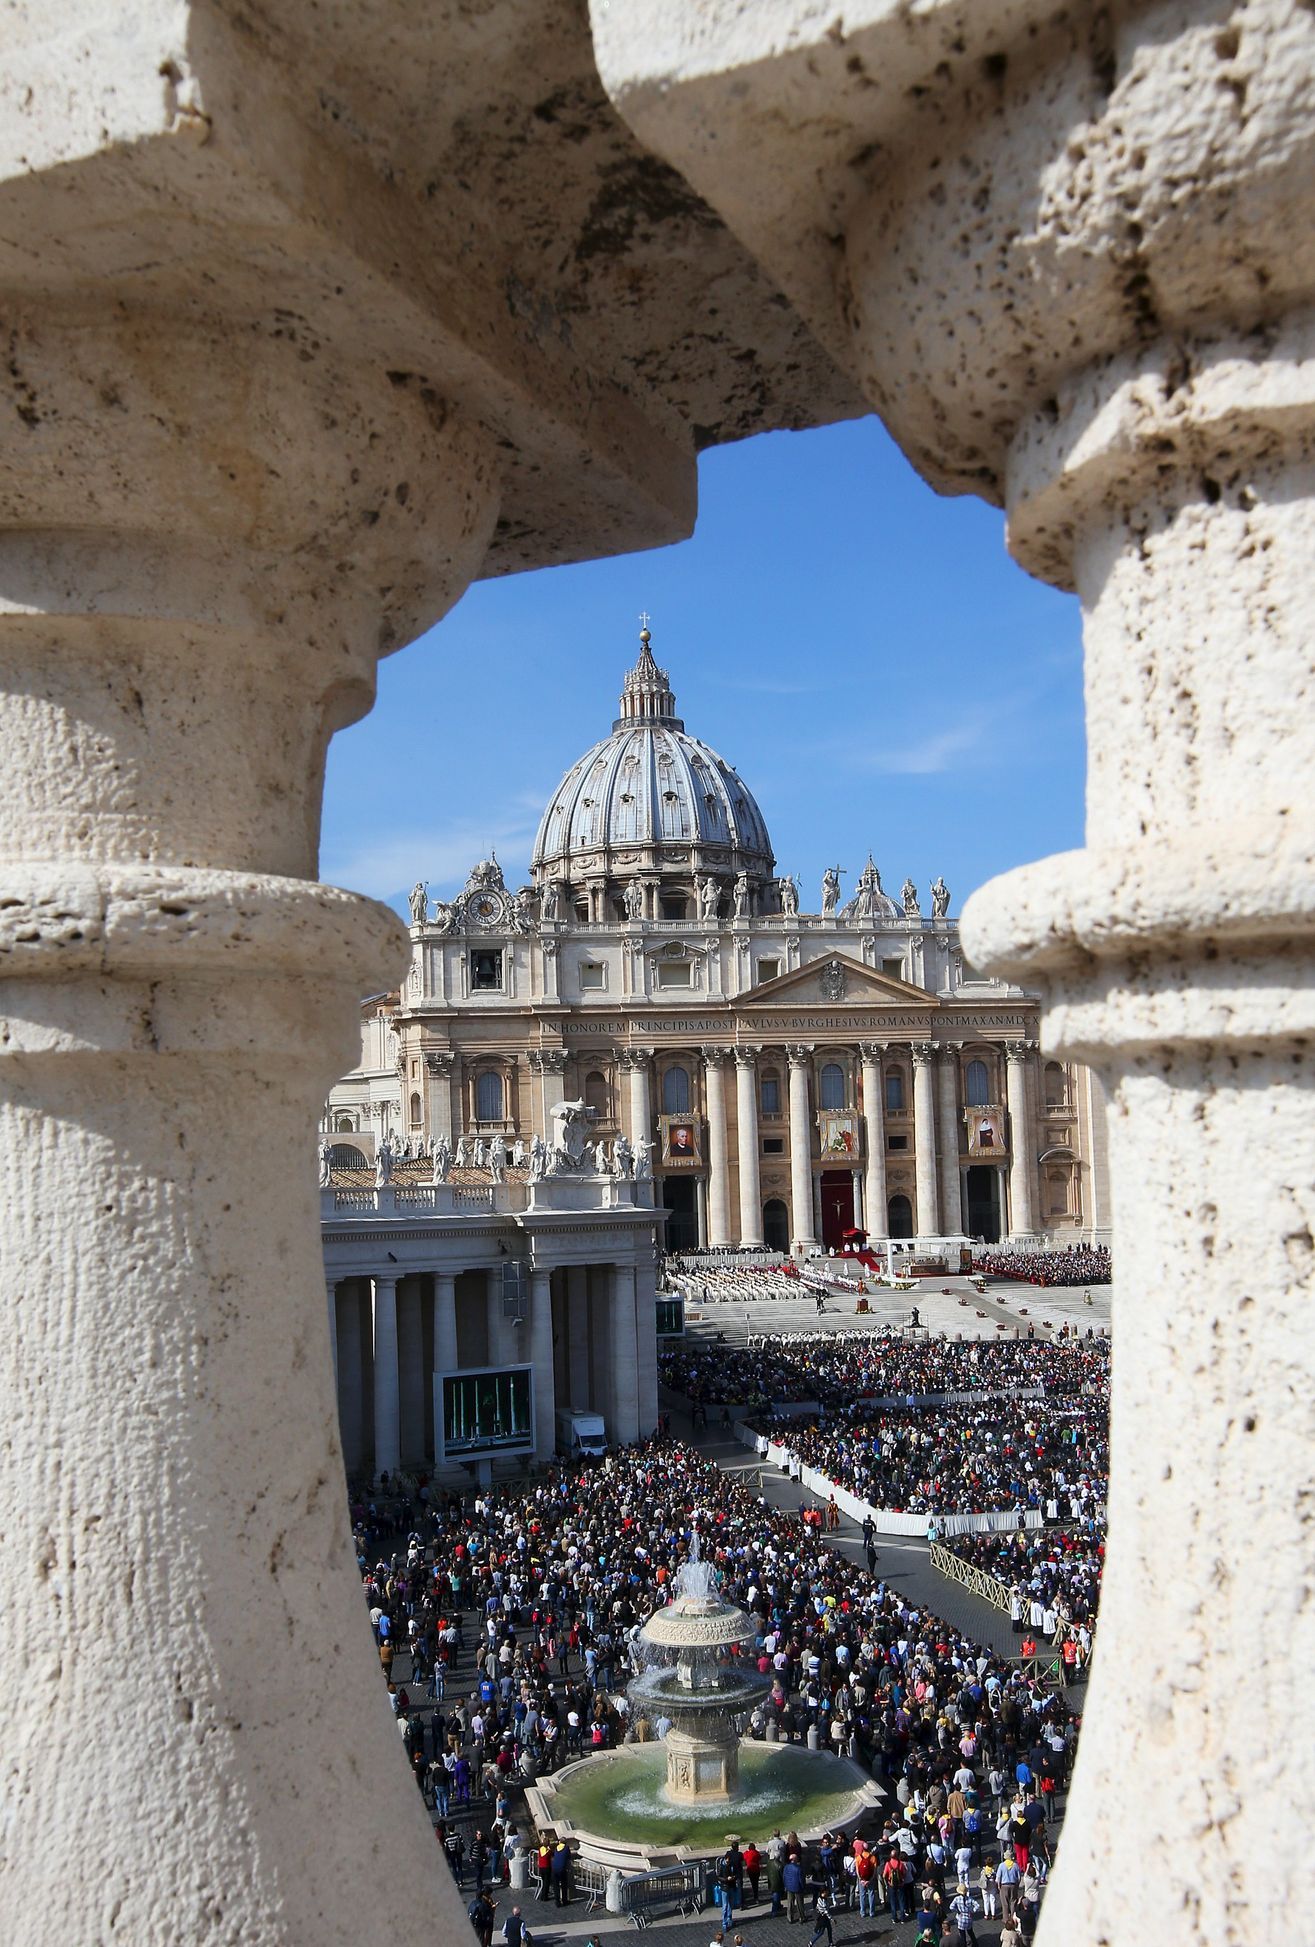 Der Vatikan änderte seine Anlagepolitik komplett.  Geld fließt nur in die „richtigen“ Projekte